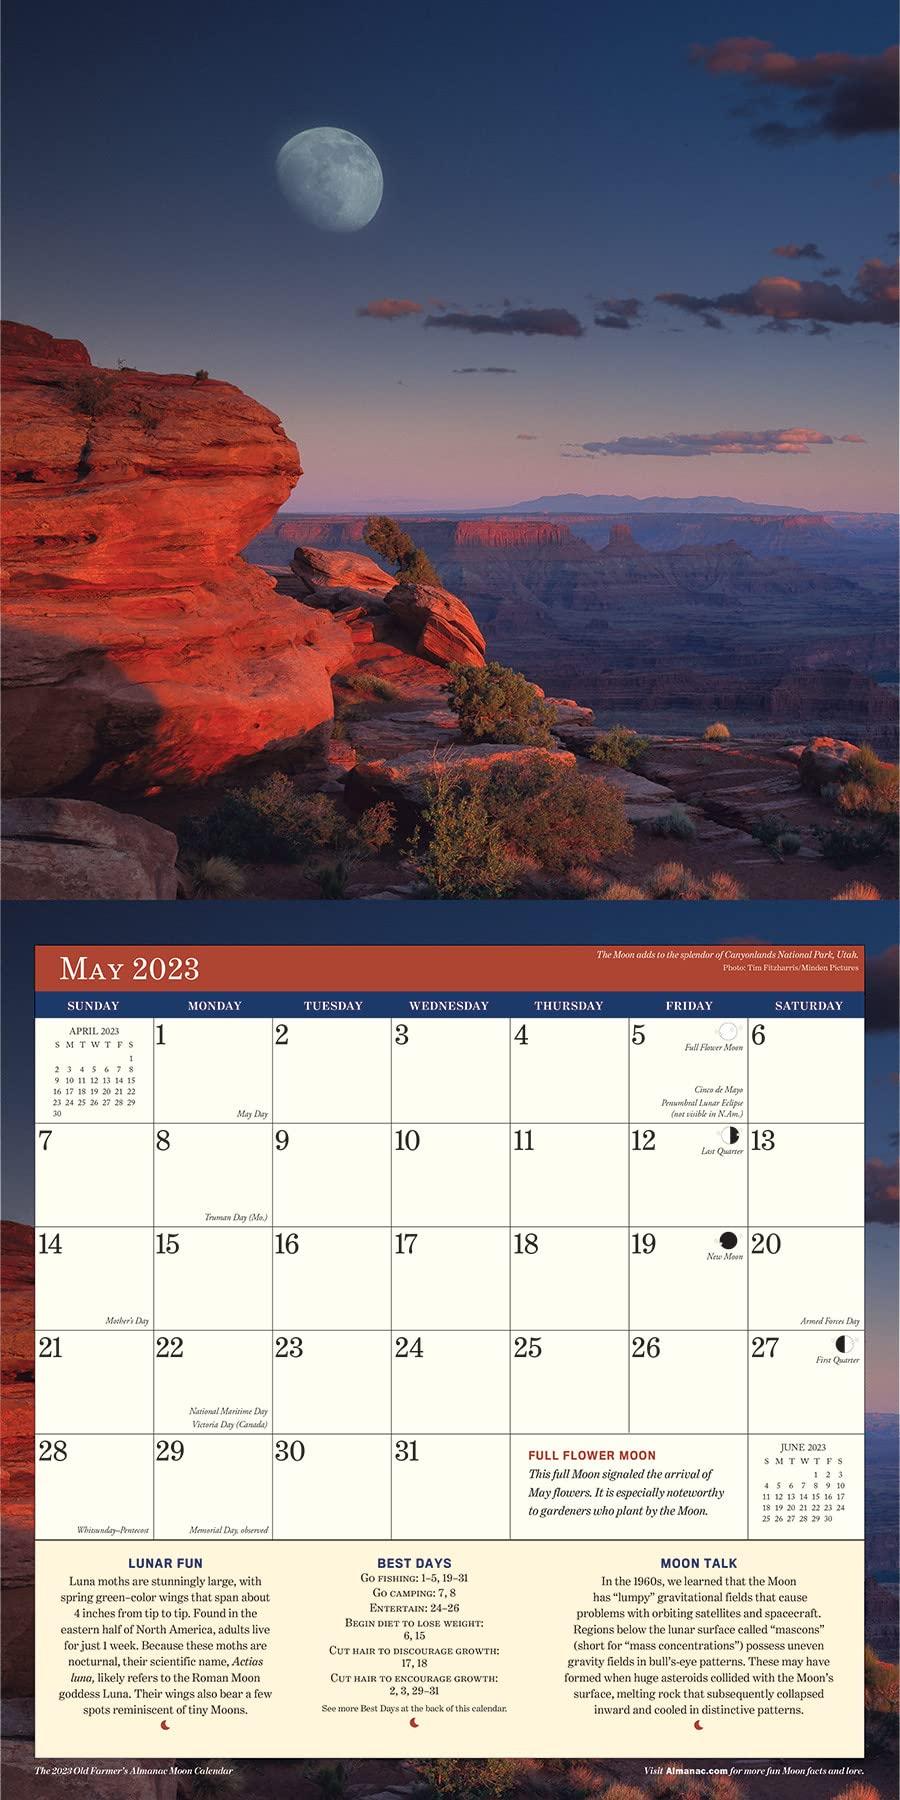 Farmers Almanac Calendar 2023 Customize and Print